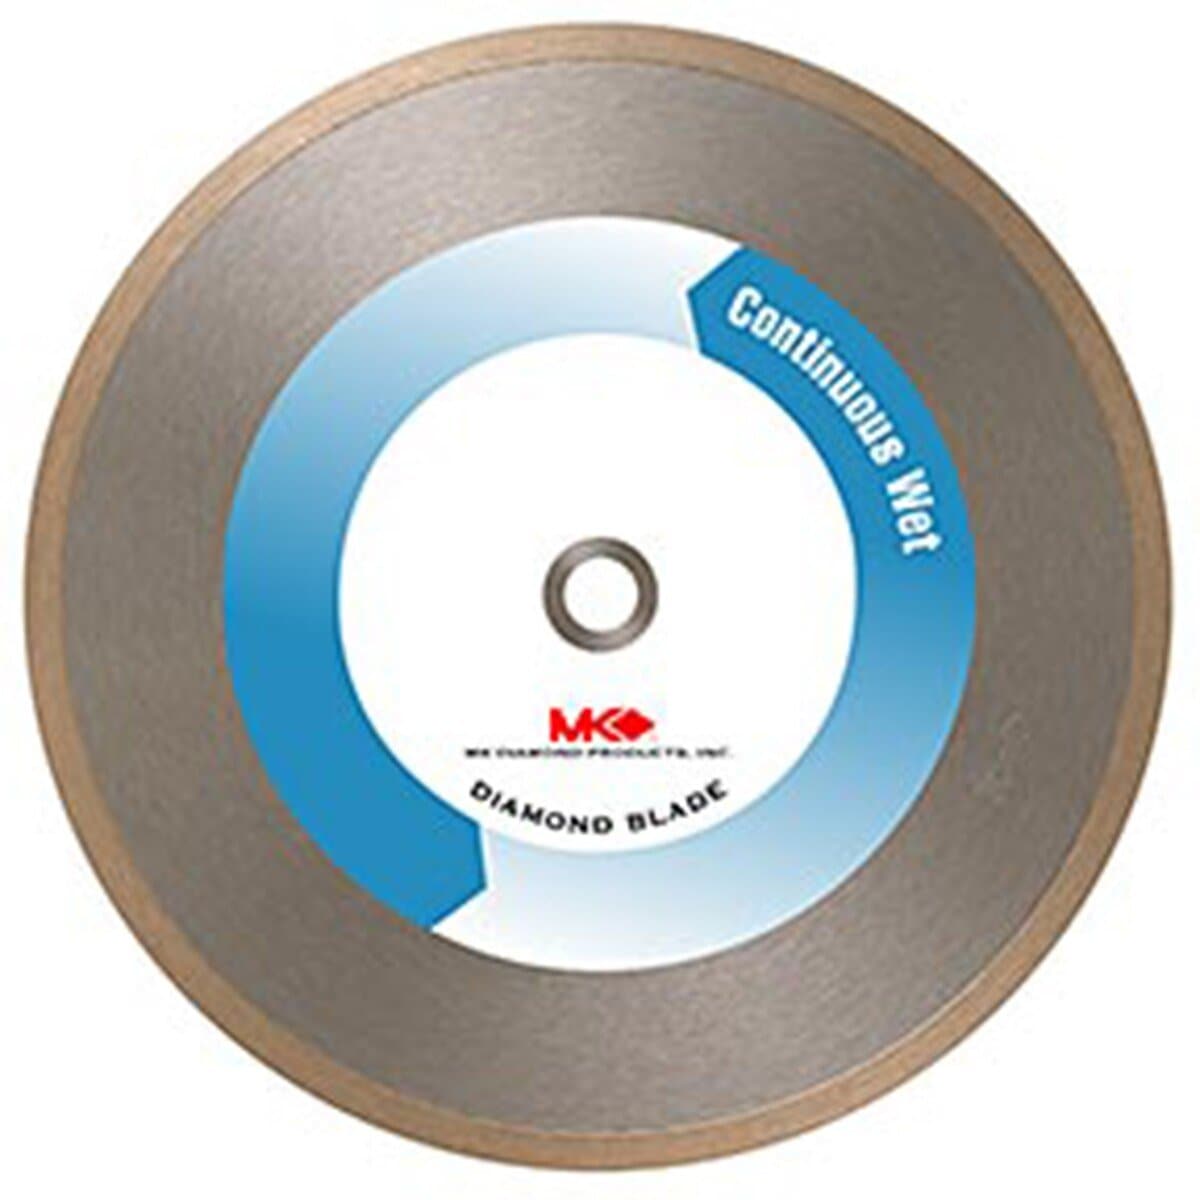 MK-215 Continuous Rim Wet Tile Cutting Blades (Premium) - MK Diamond